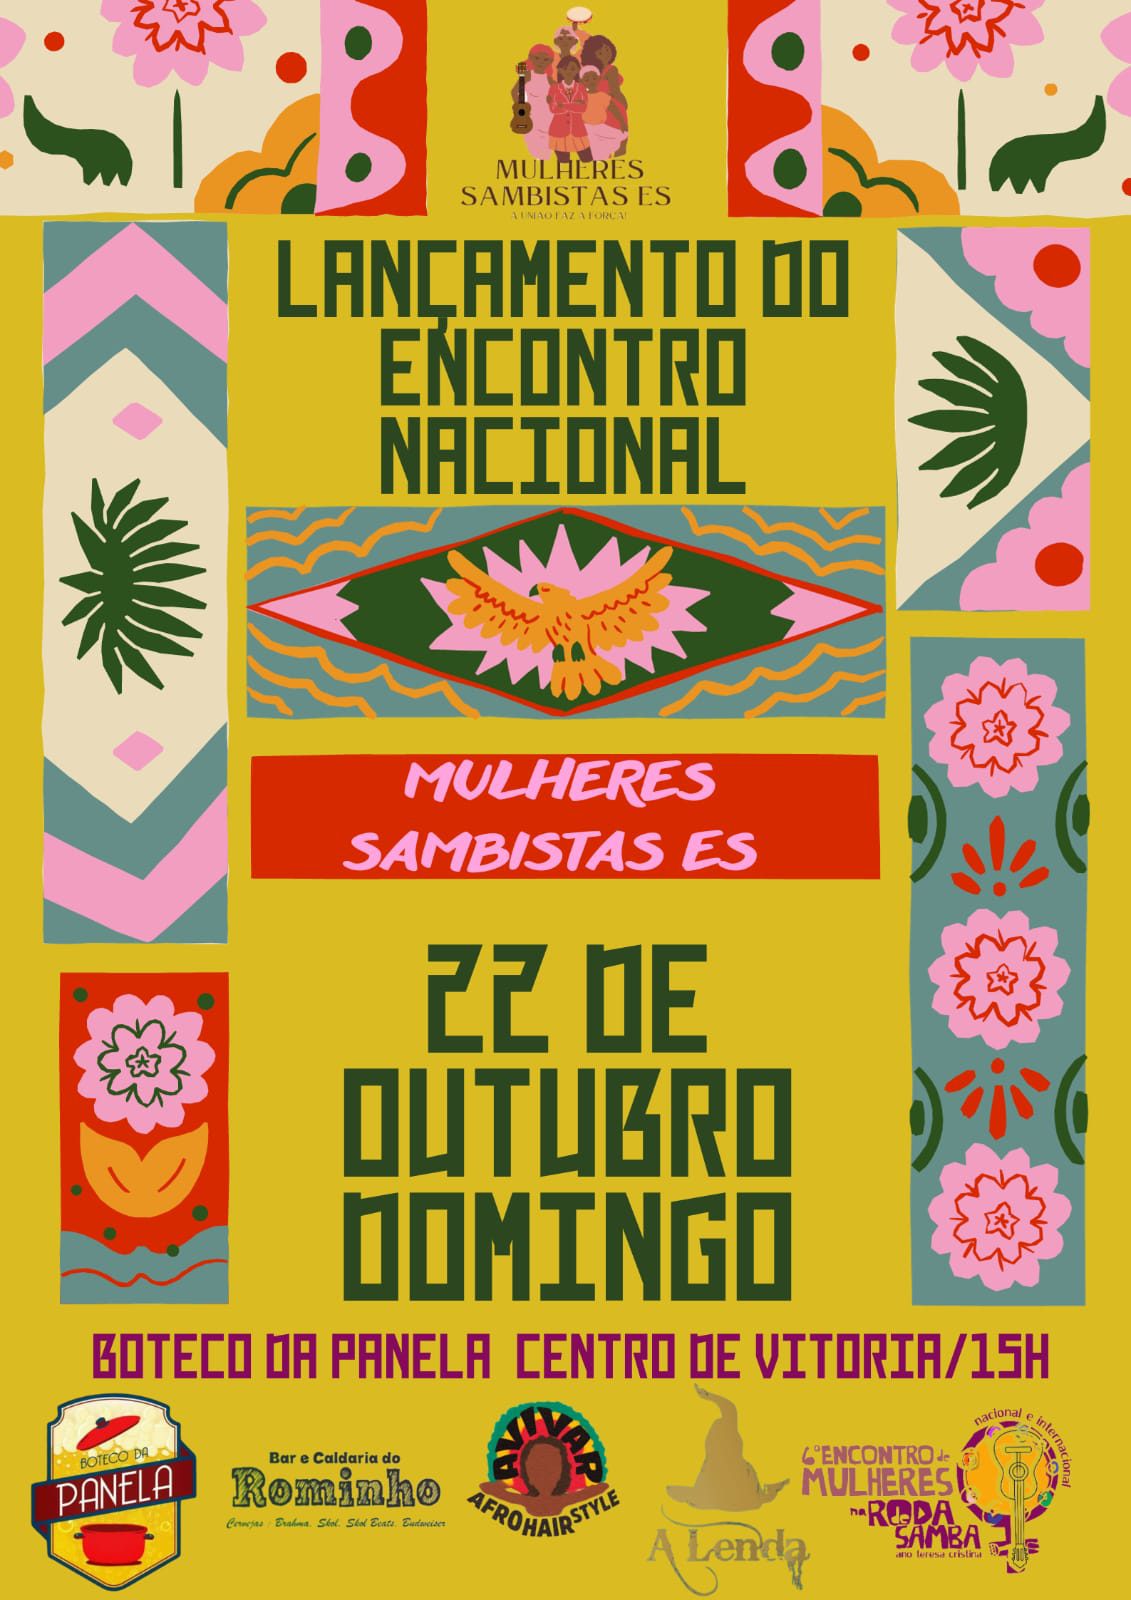 Encontro Nacional e Internacional de Mulheres na Roda de Samba 2023 é lançado com muita celebração